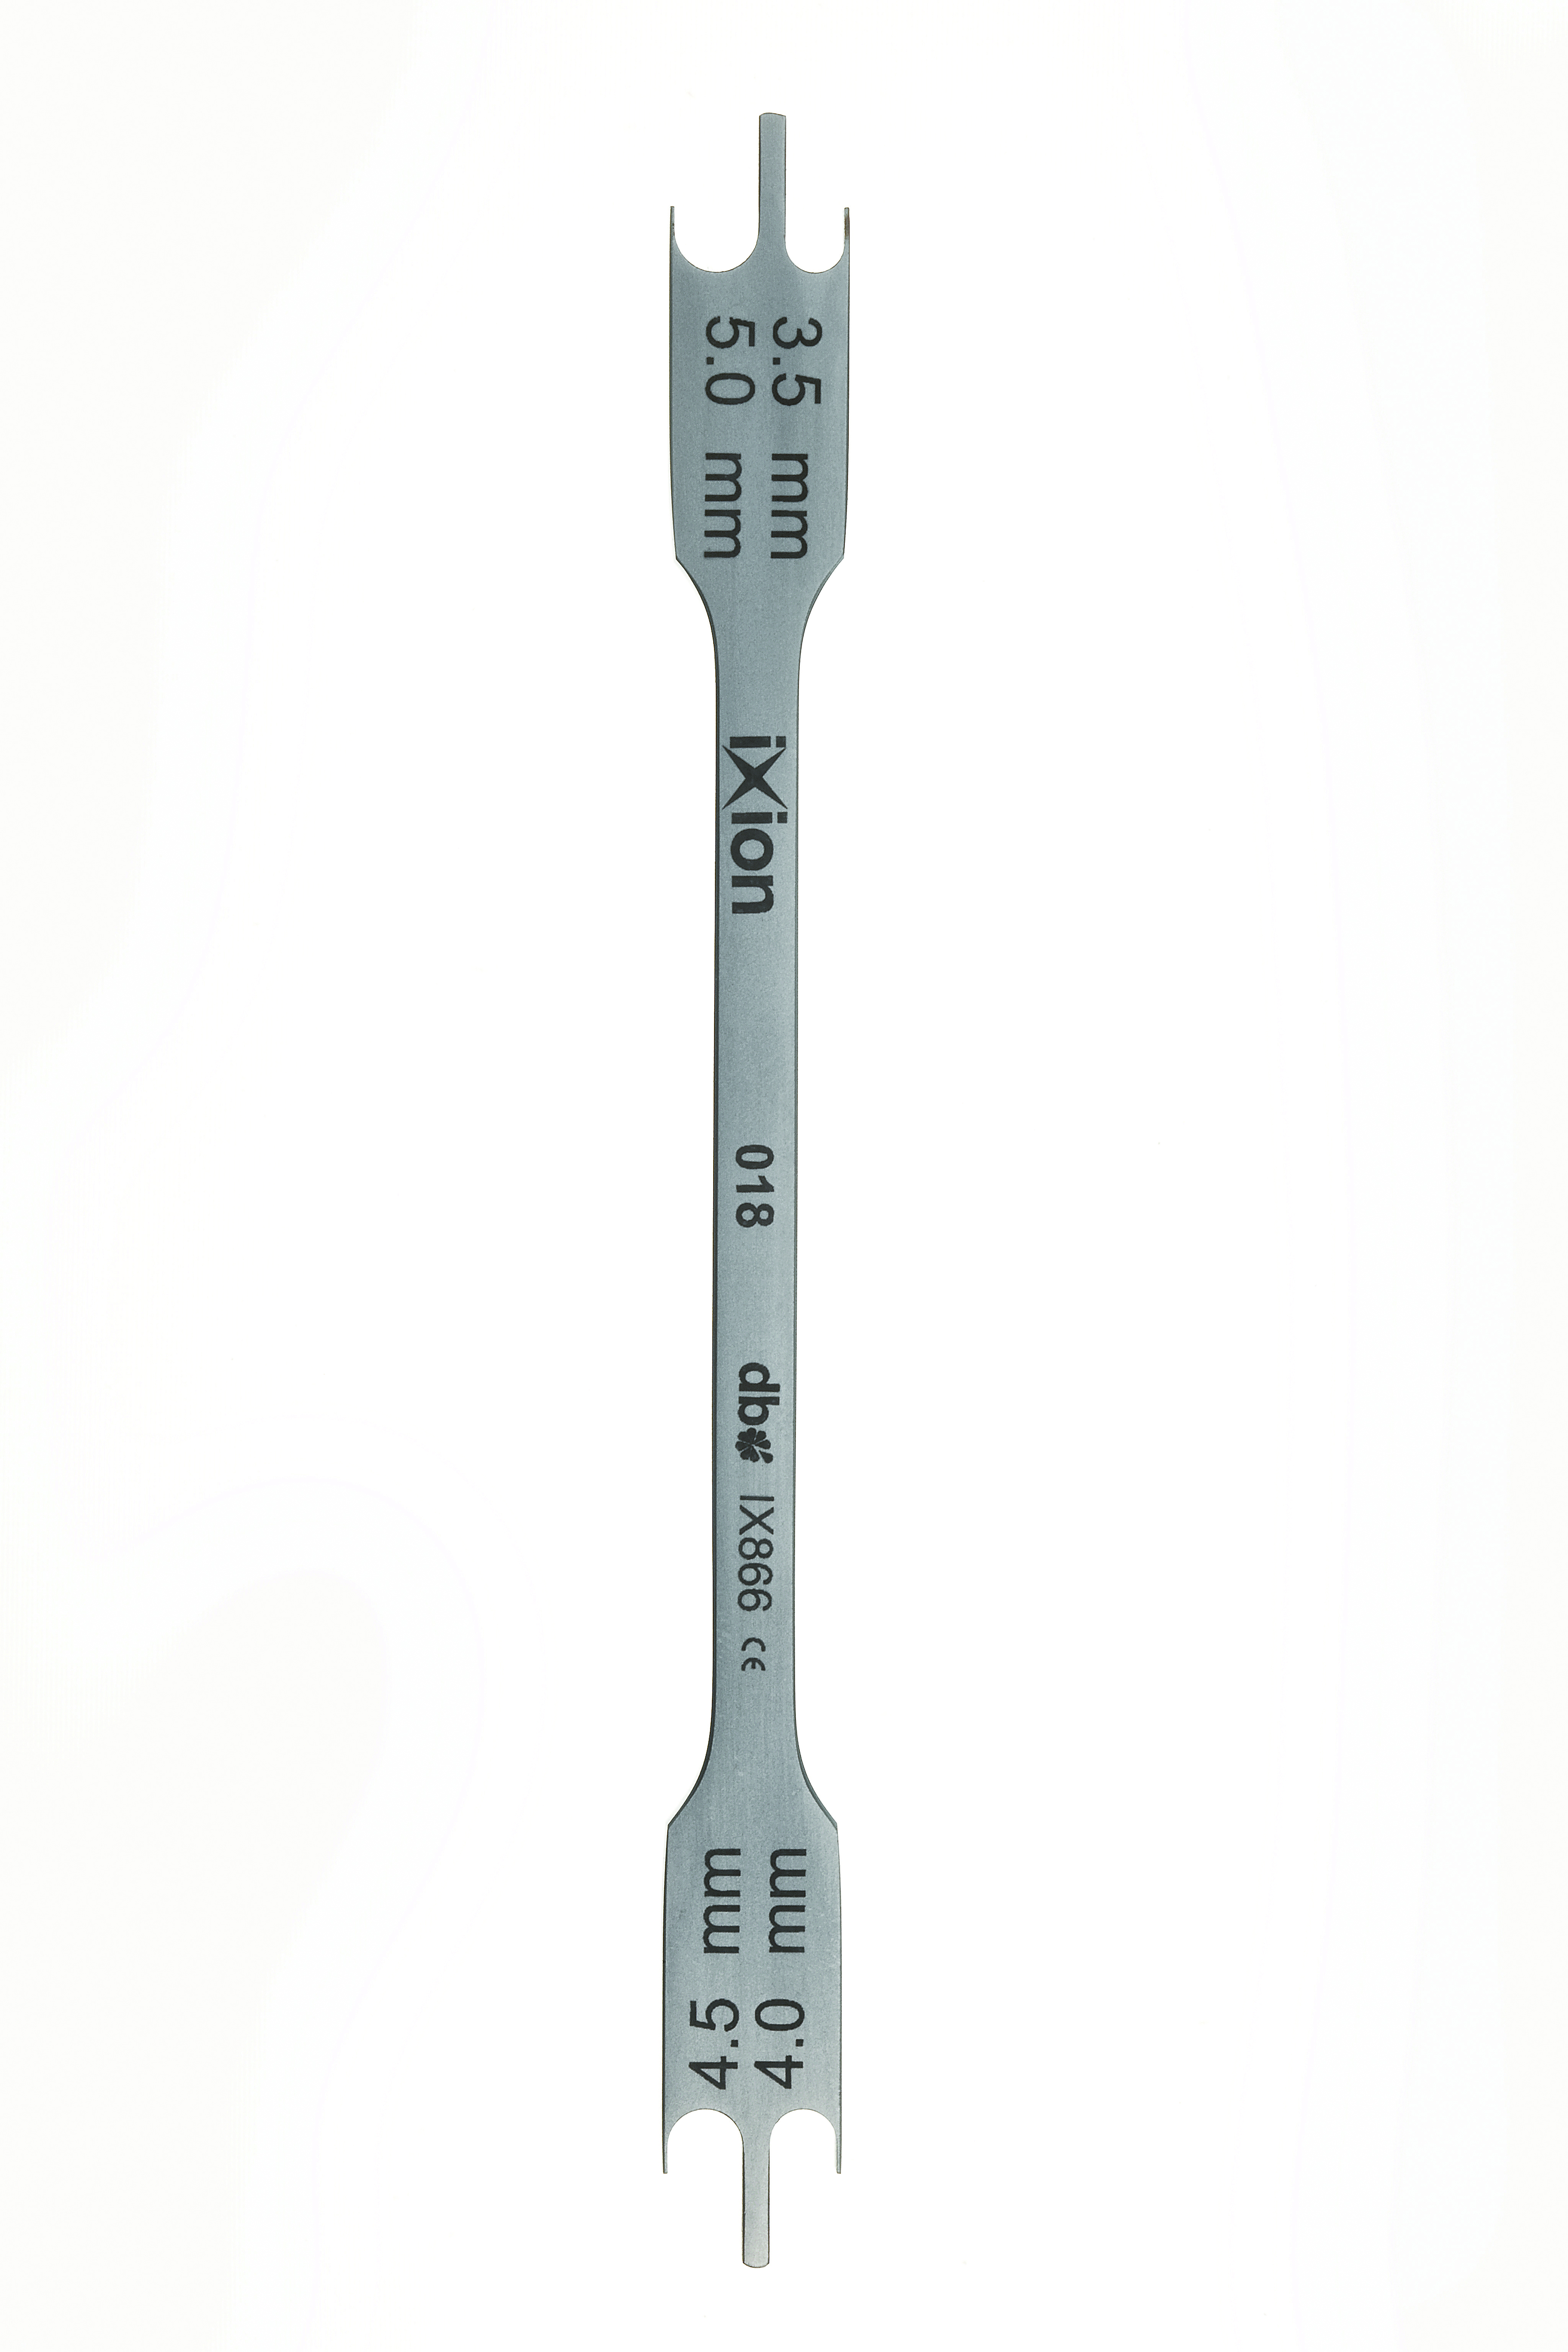 Altimetro per pesa neonati 376 - PraxiMed - Intermed S.r.l. Strumenti  Medicali e ausili